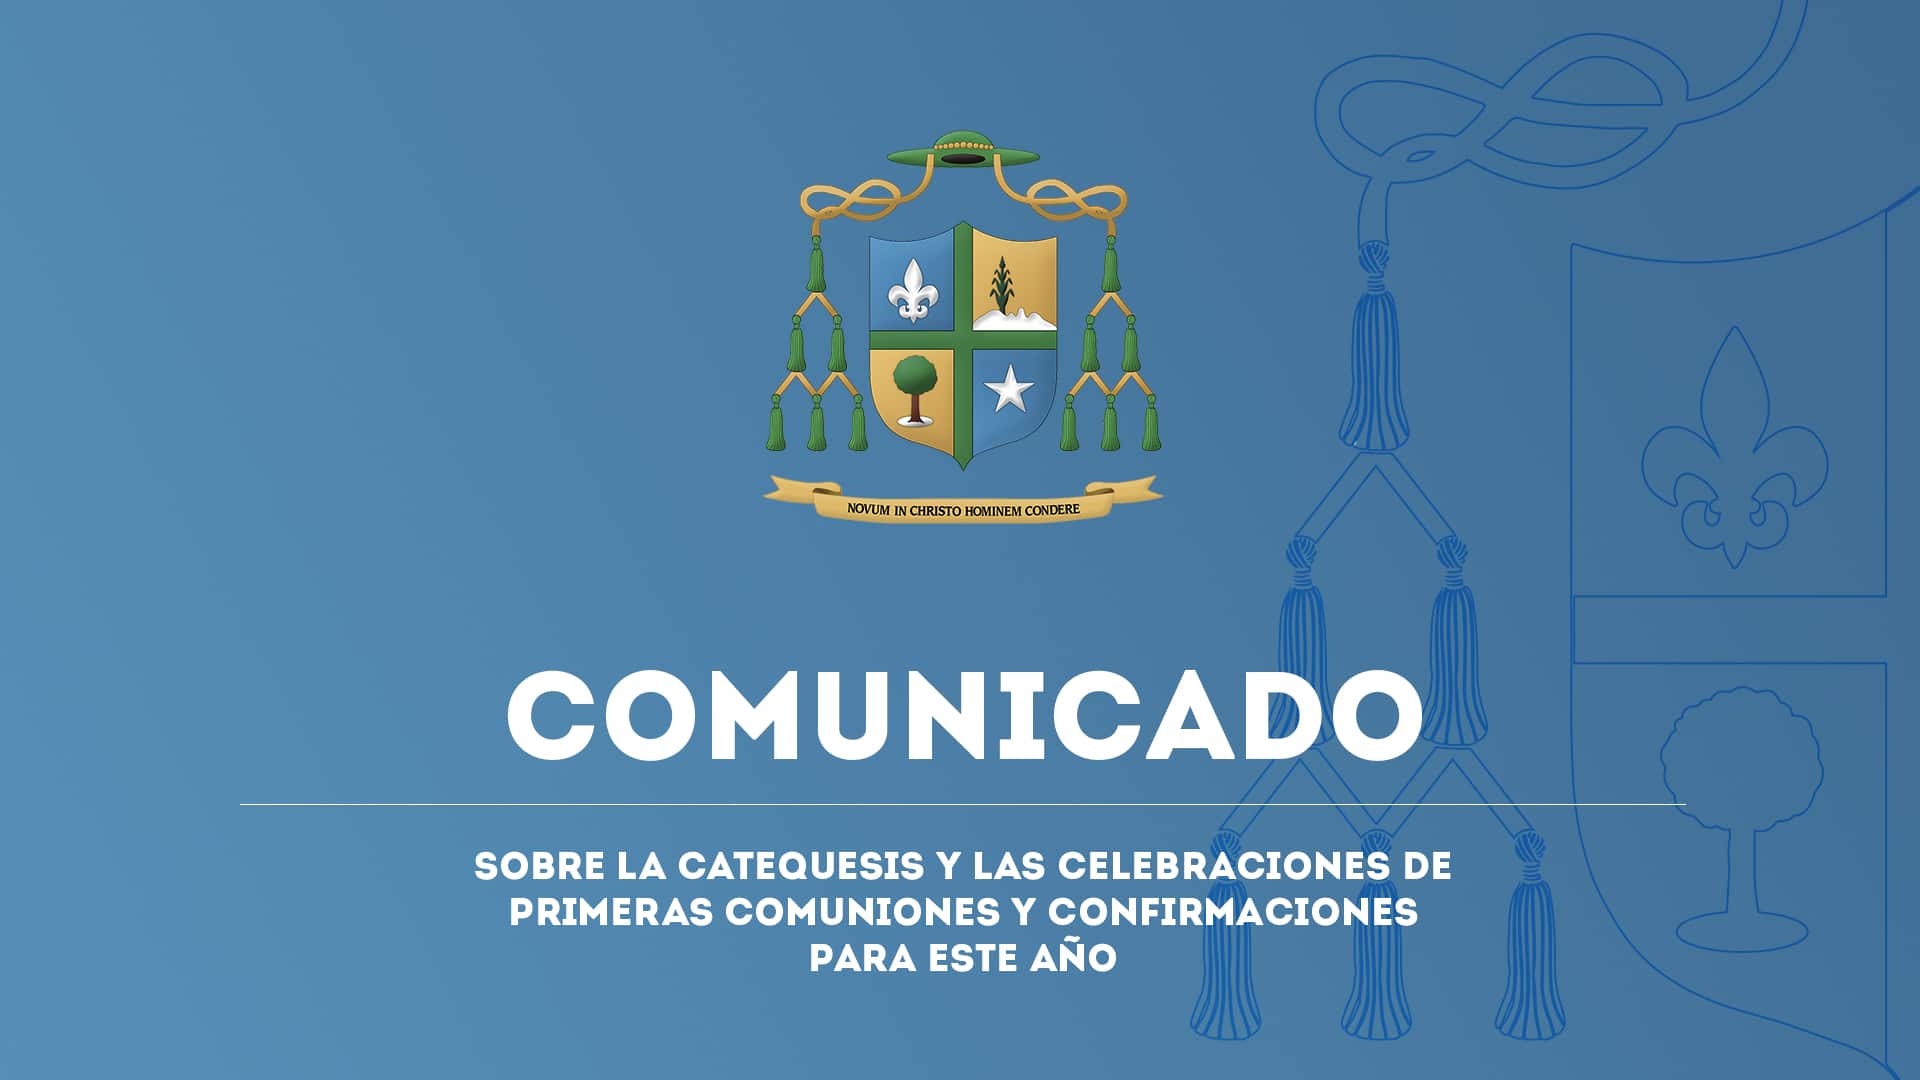 Comunicado sobre la catequesis a Junio de 2020 - Revista Católica La Senda - Diócesis de Tepic